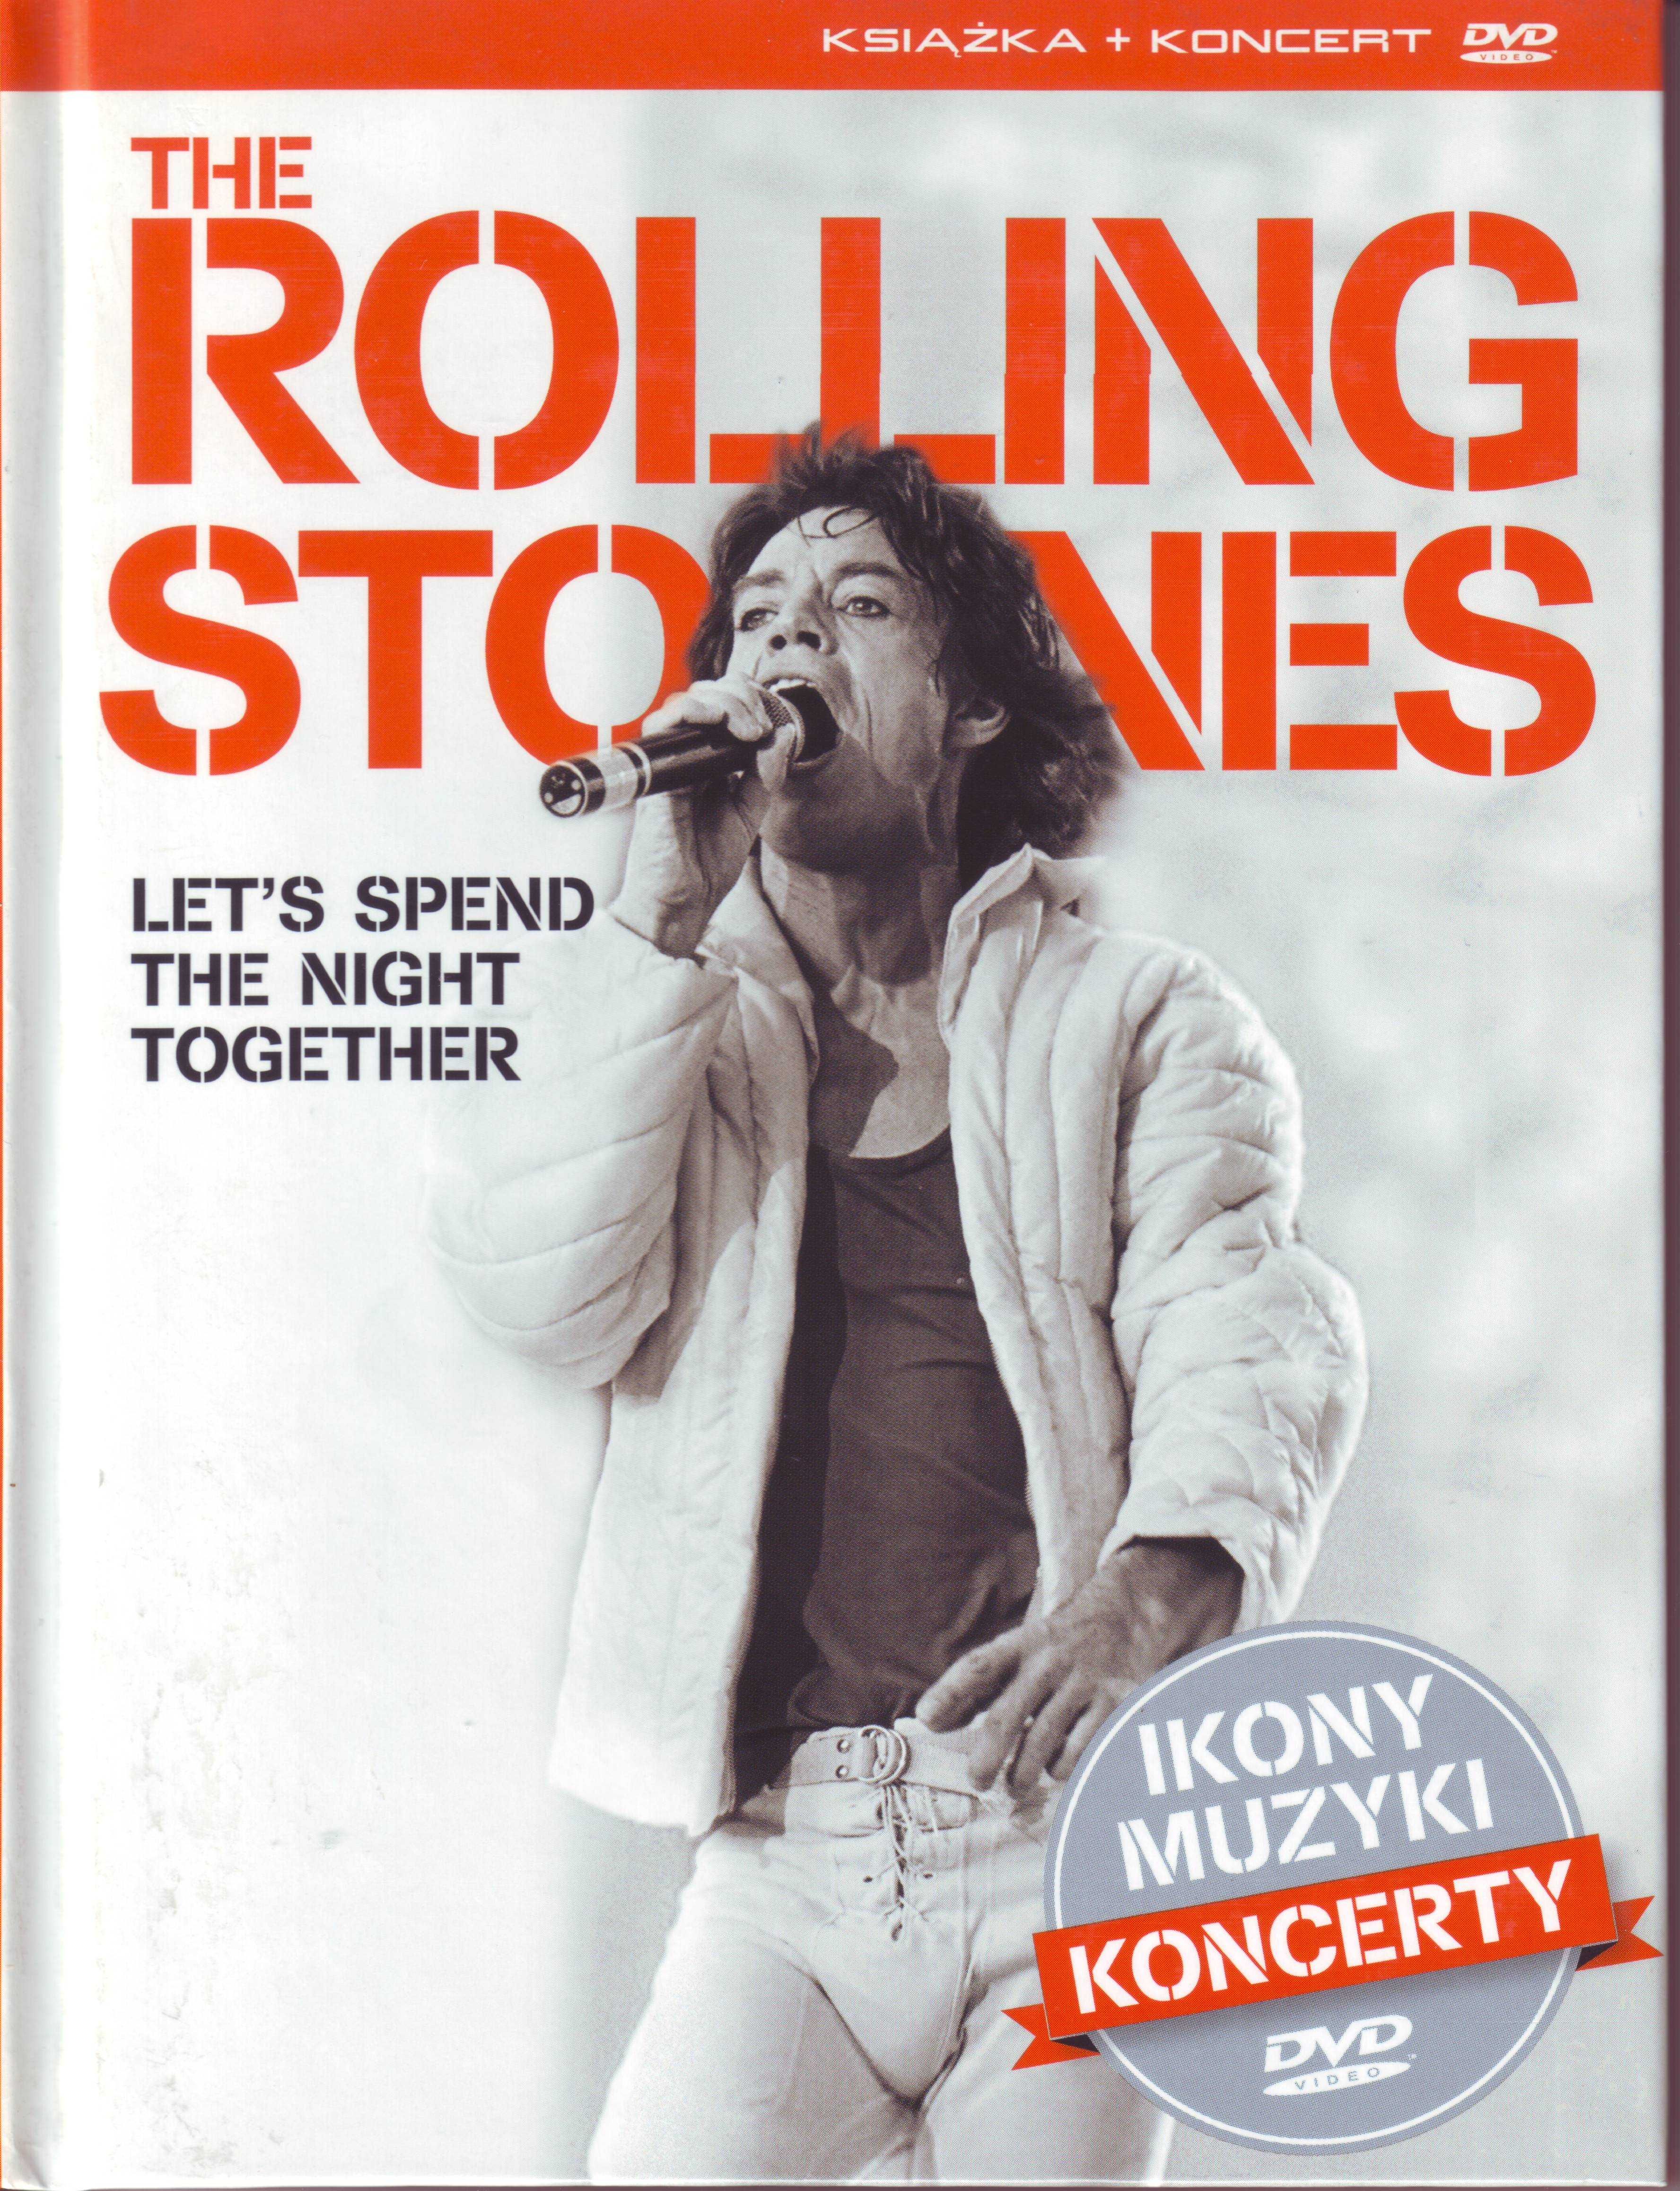 Film "The Rolling Stones" zapis koncertów + książeczka. DVD